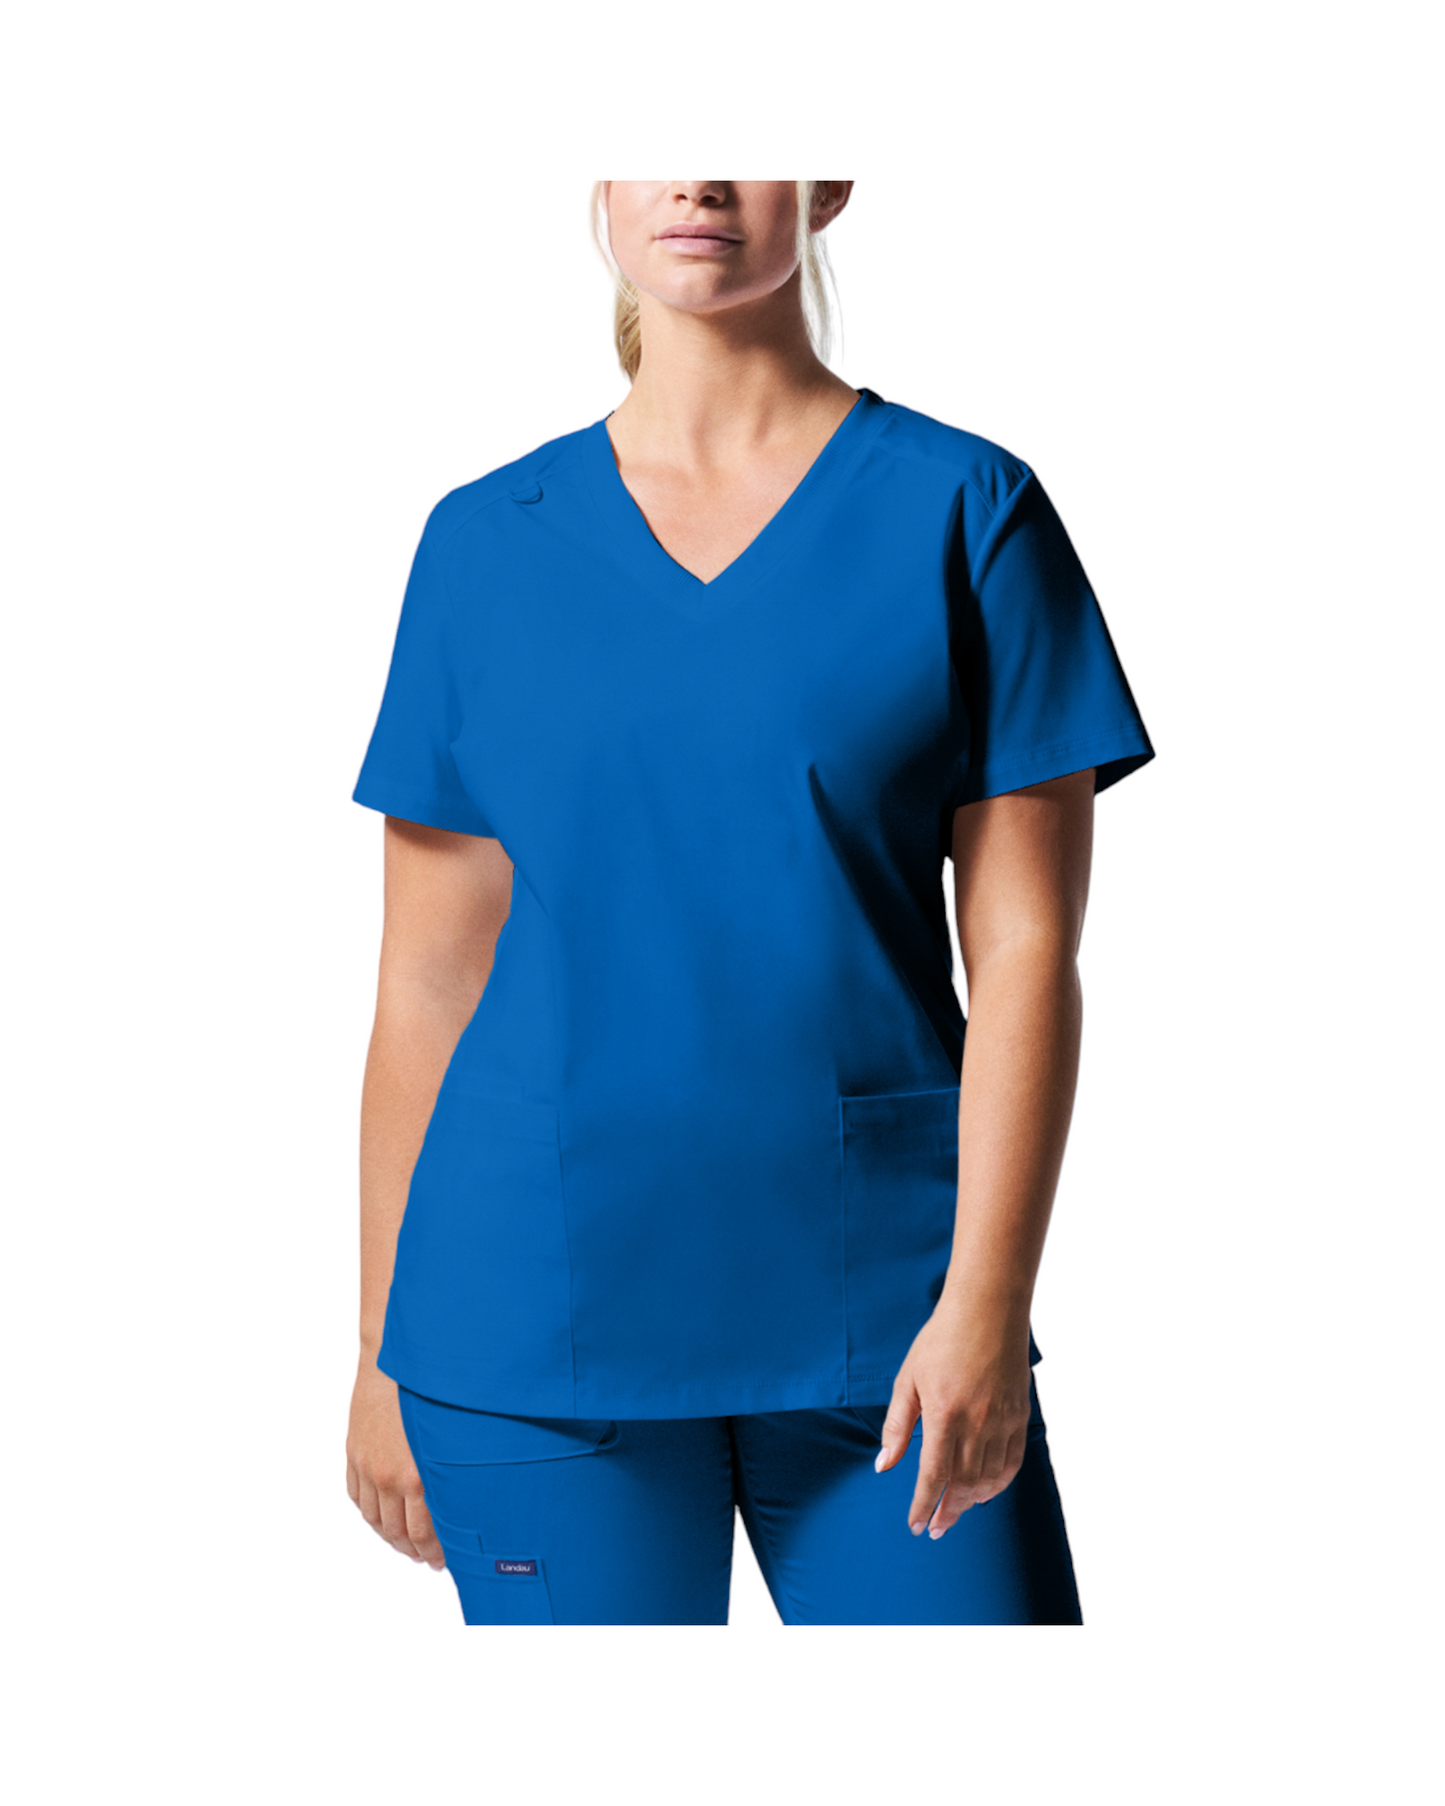 Uniforme de marque landau pour femmes. Travailleuses du domaine de la santé. LT105 couleur Royal, col en V.